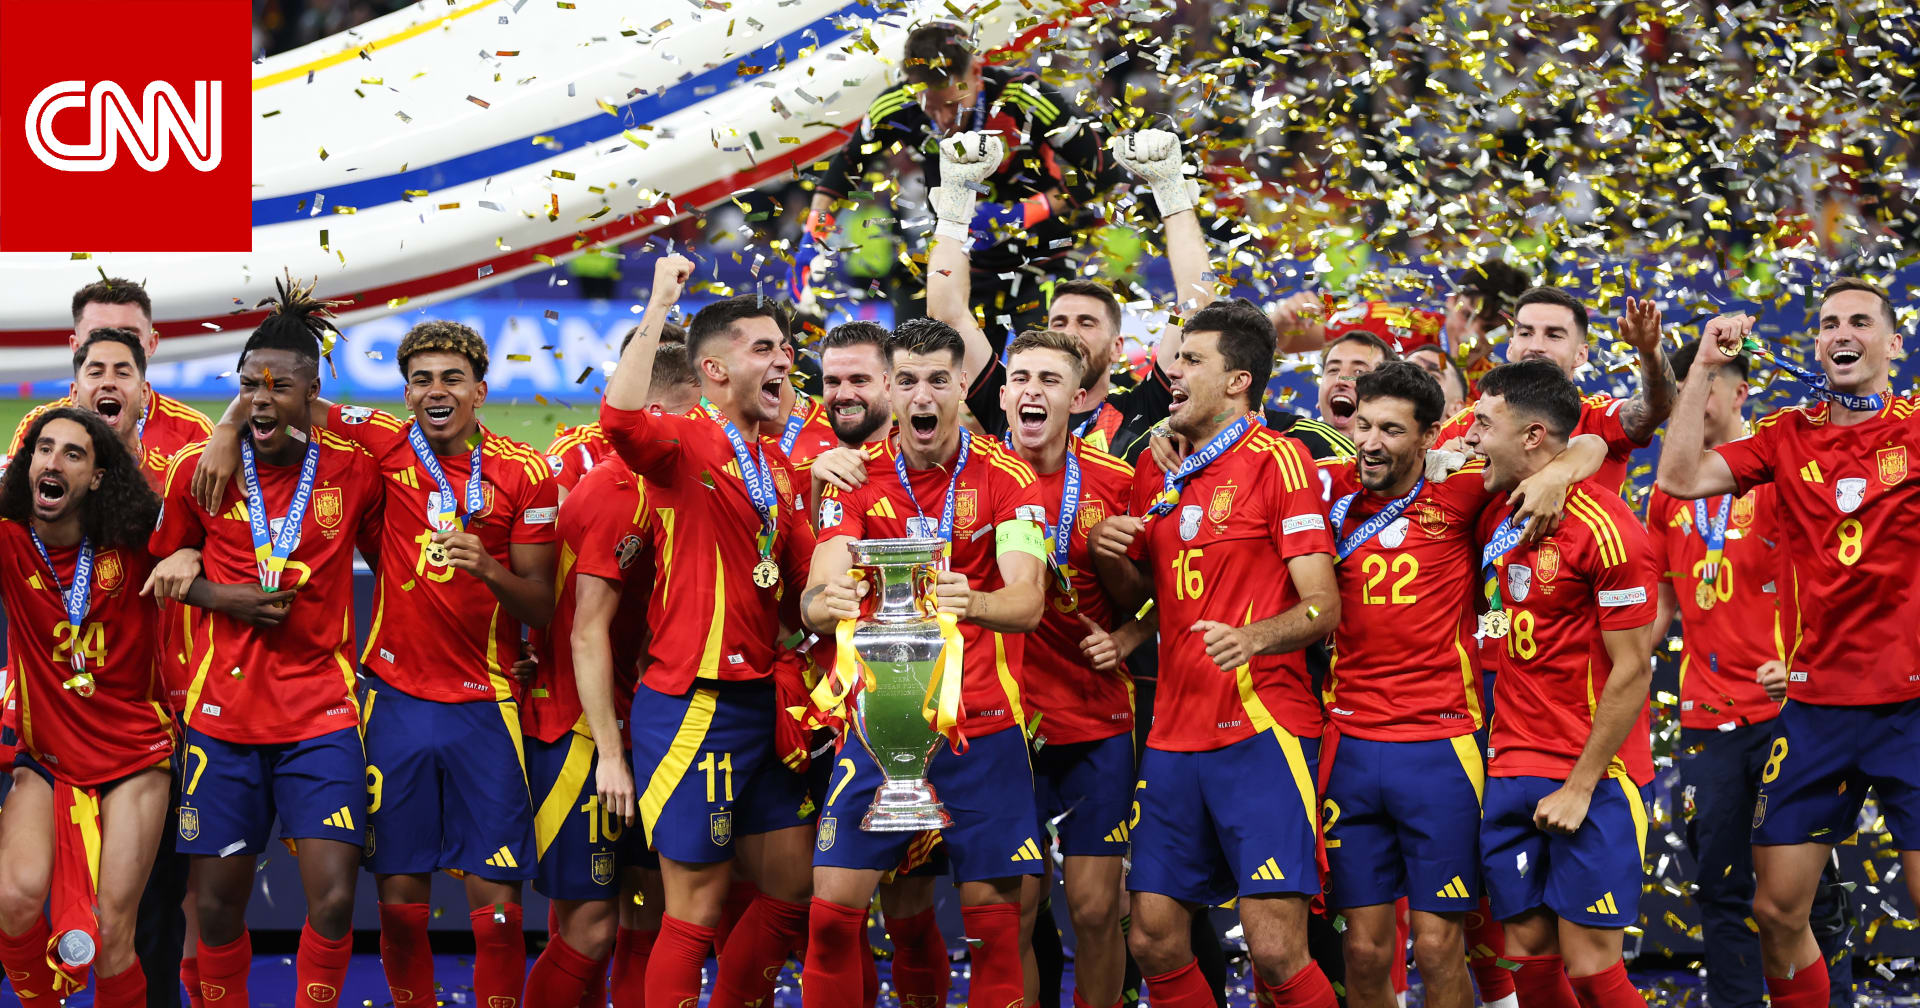 للمرة الرابعة في تاريخها.. إسبانيا تتوج بكأس أمم أوروبا بعد فوز مثير على إنجلترا